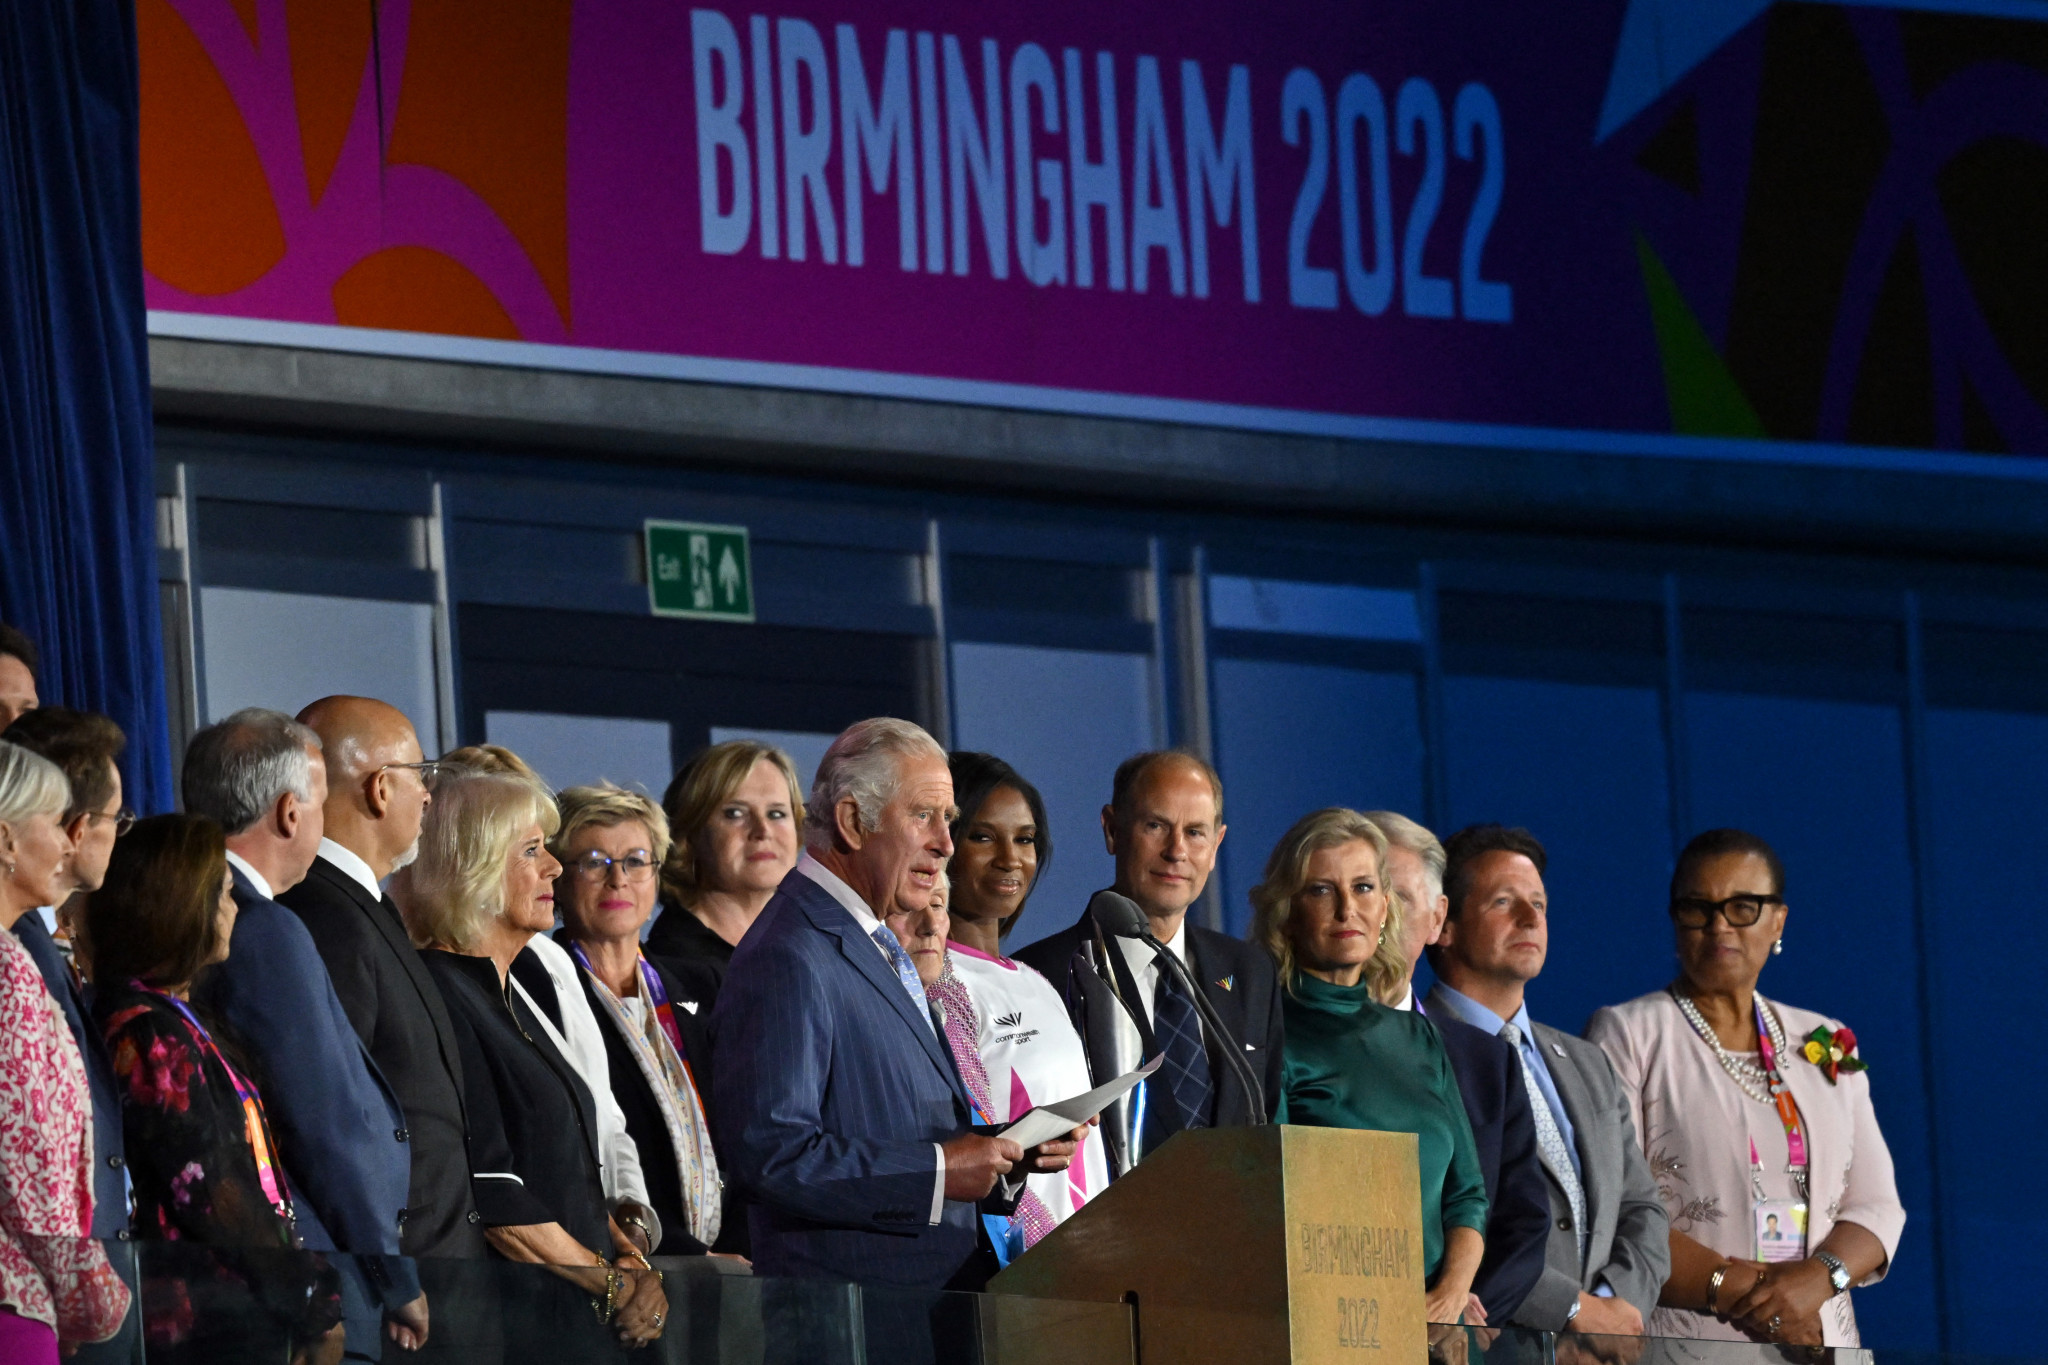 Birmingham 2022: Opening Ceremony